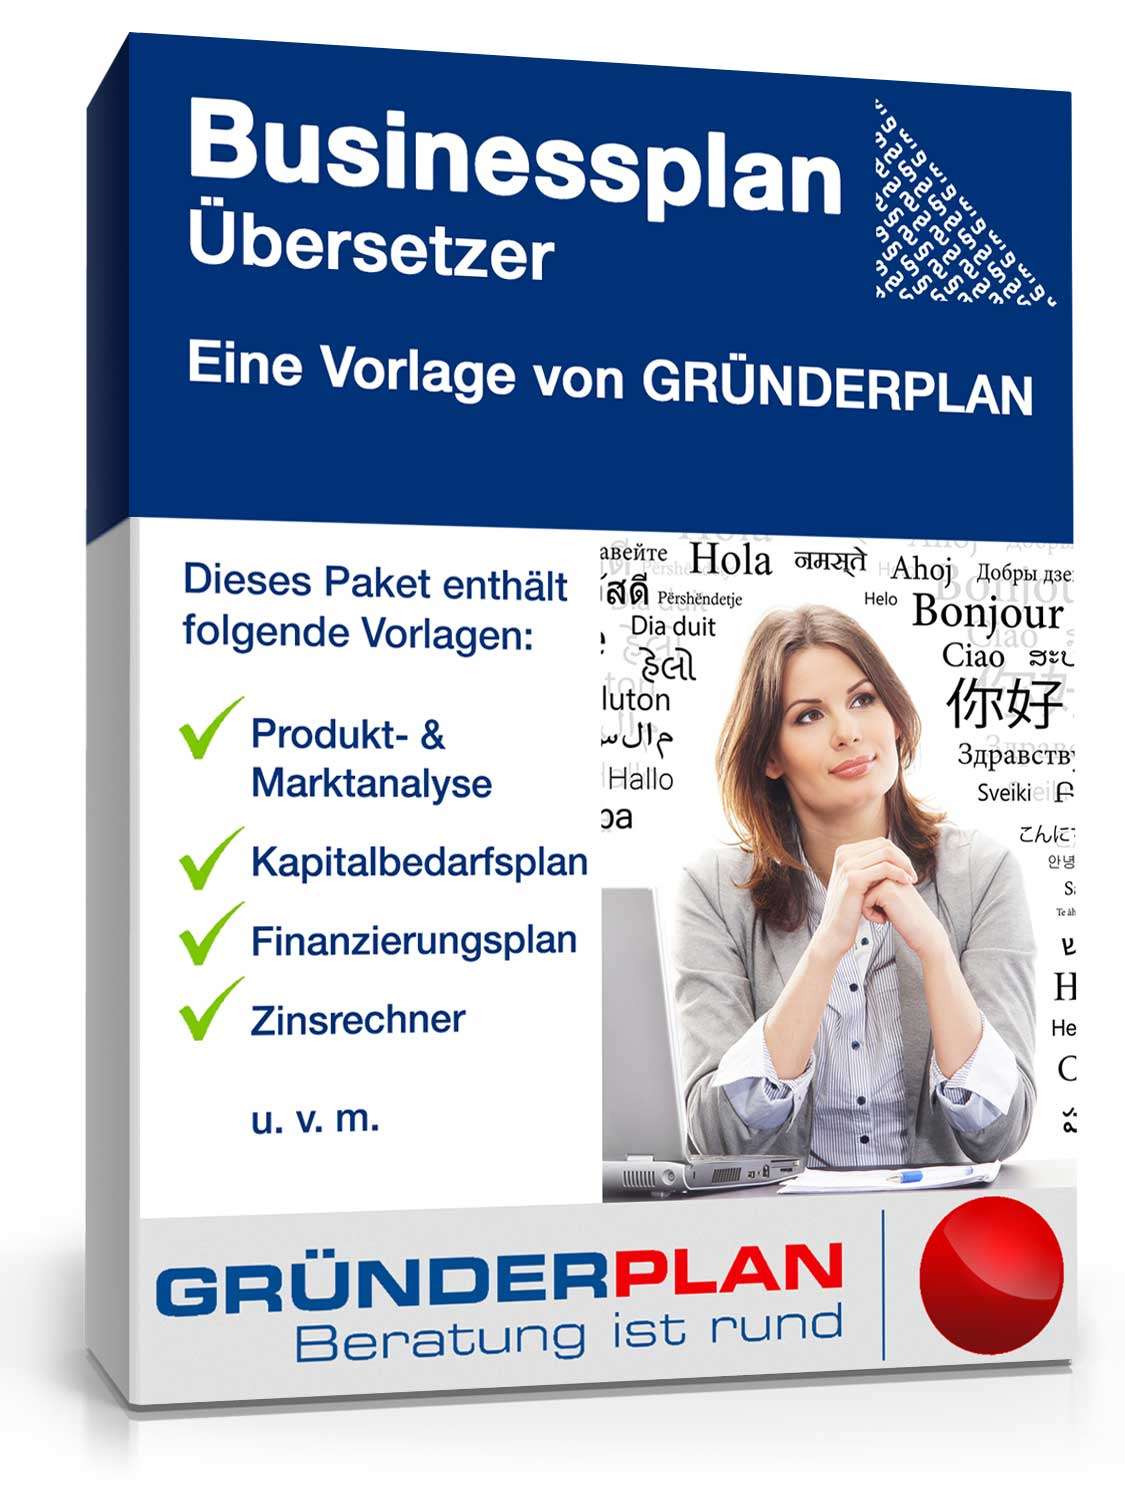 Hauptbild des Produkts: Businessplan Übersetzer von Gründerplan